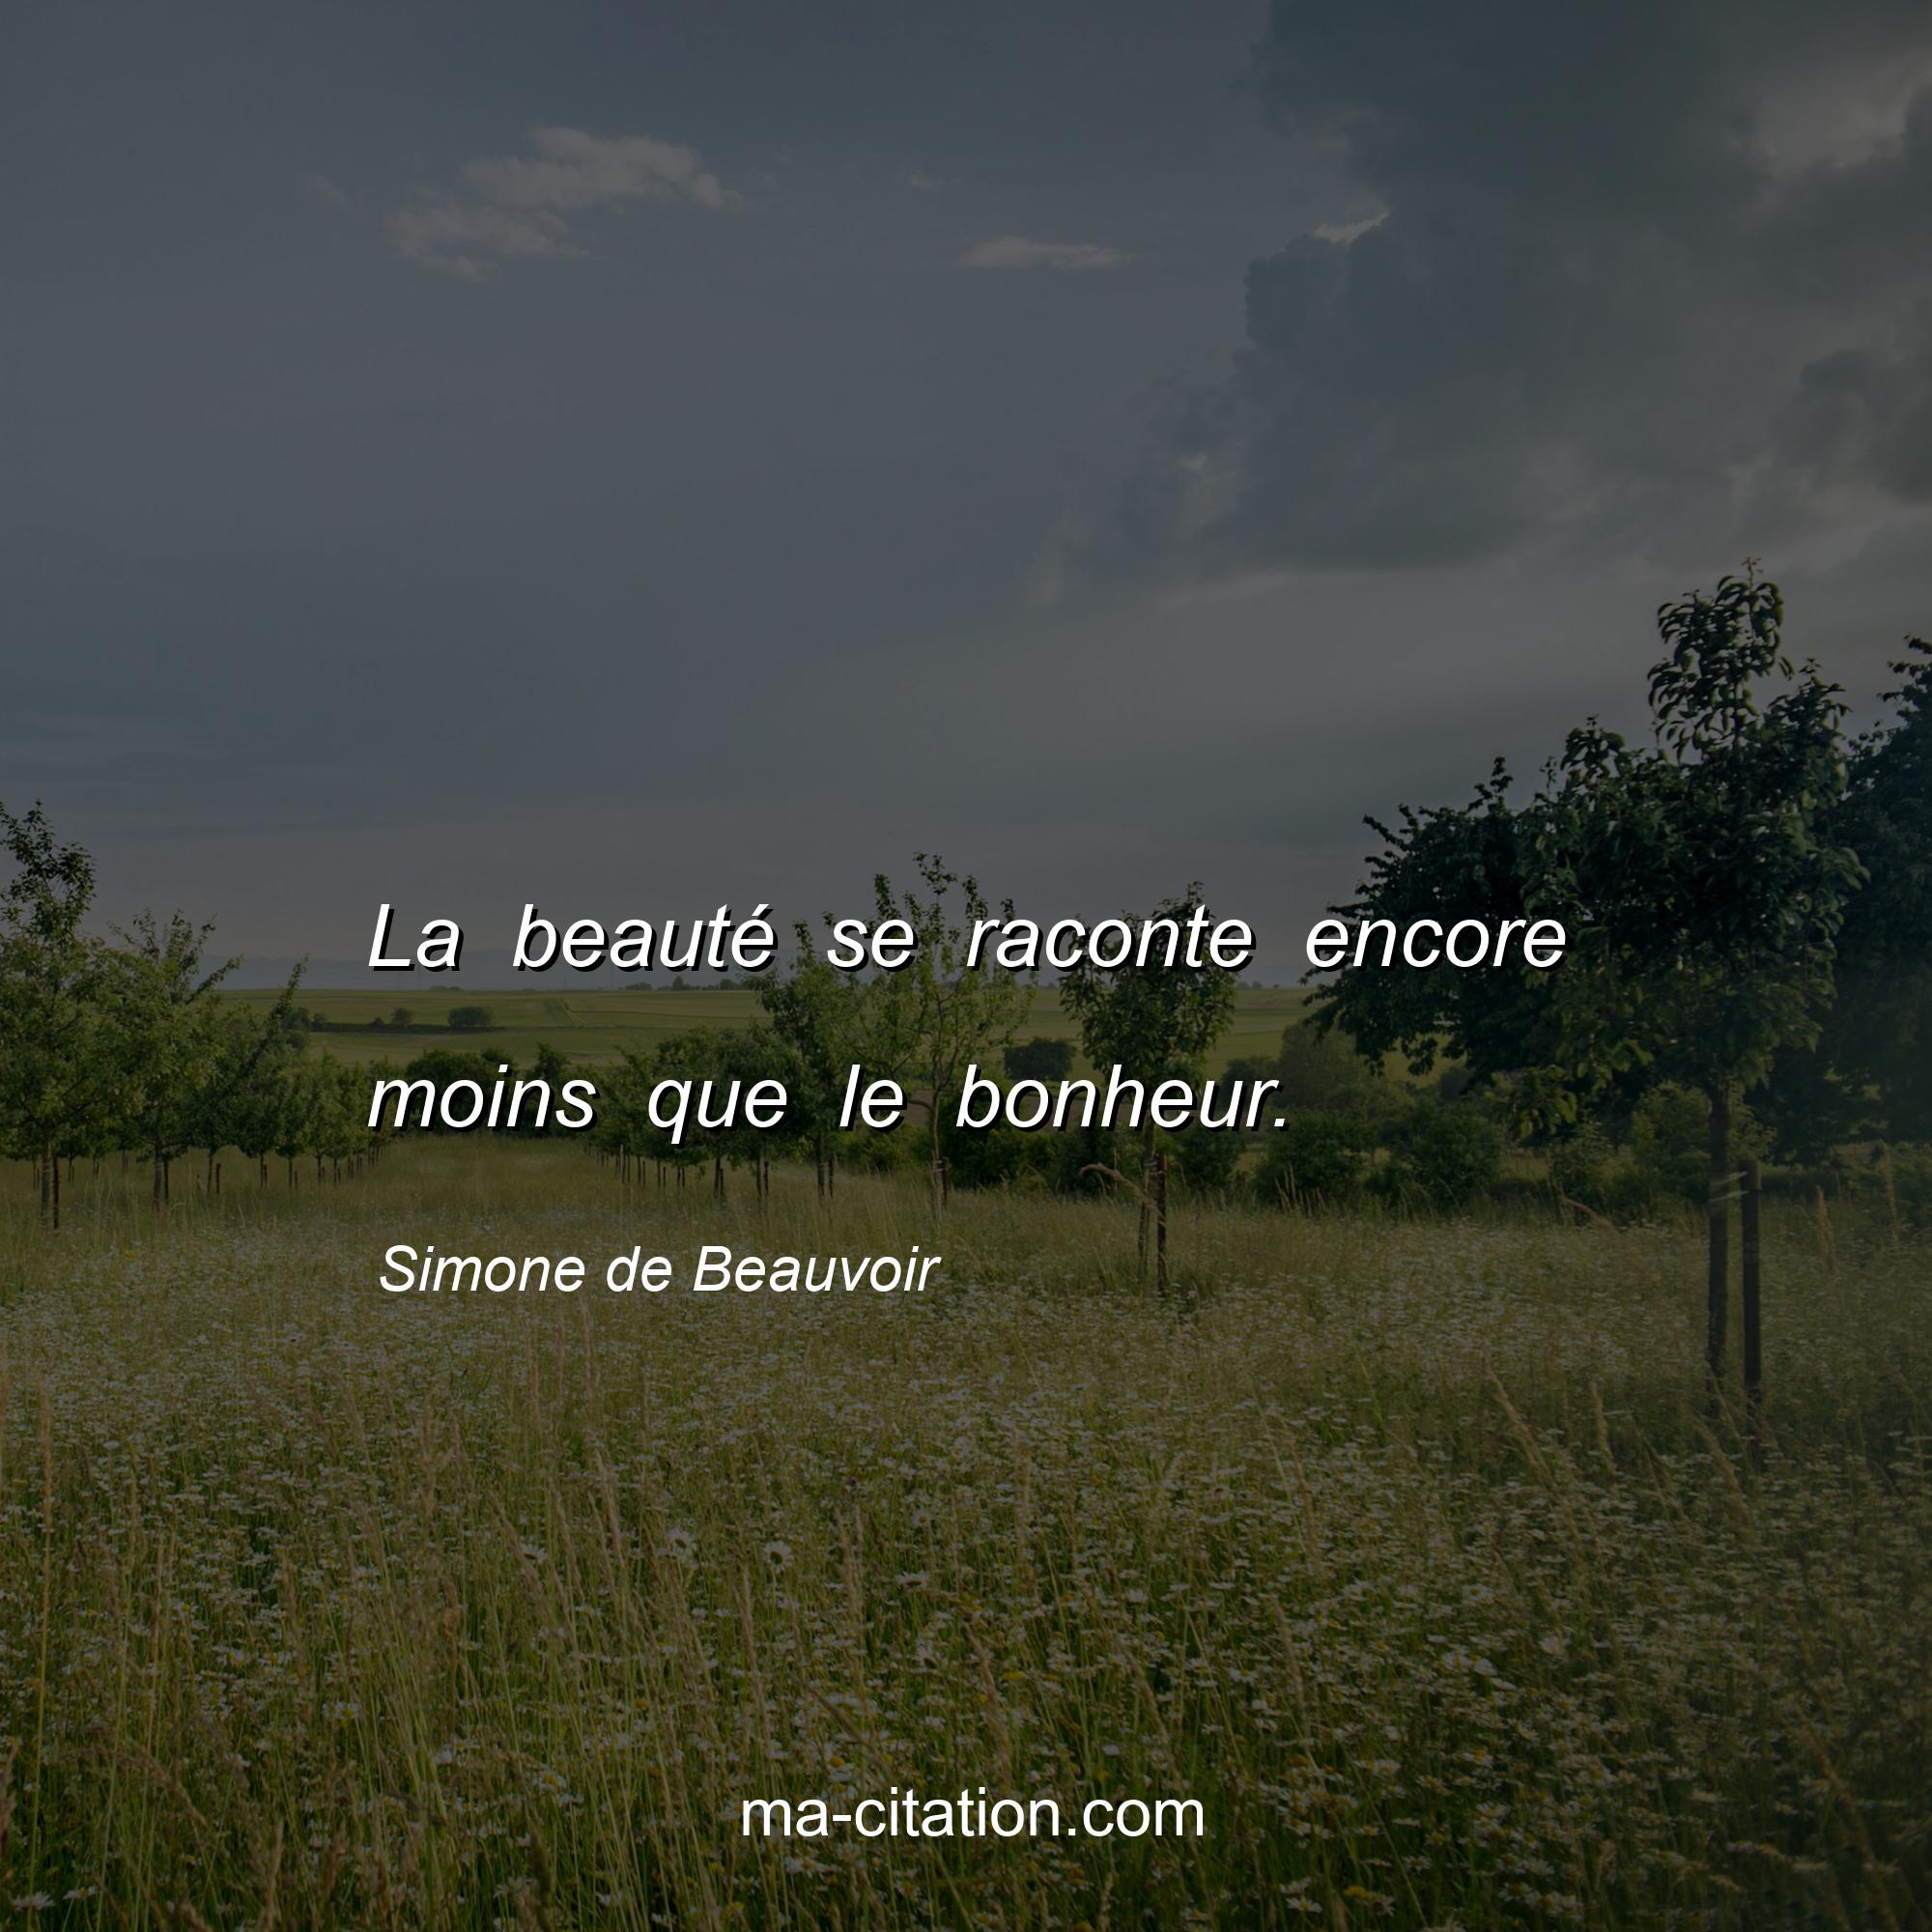 Simone de Beauvoir : La beauté se raconte encore moins que le bonheur.